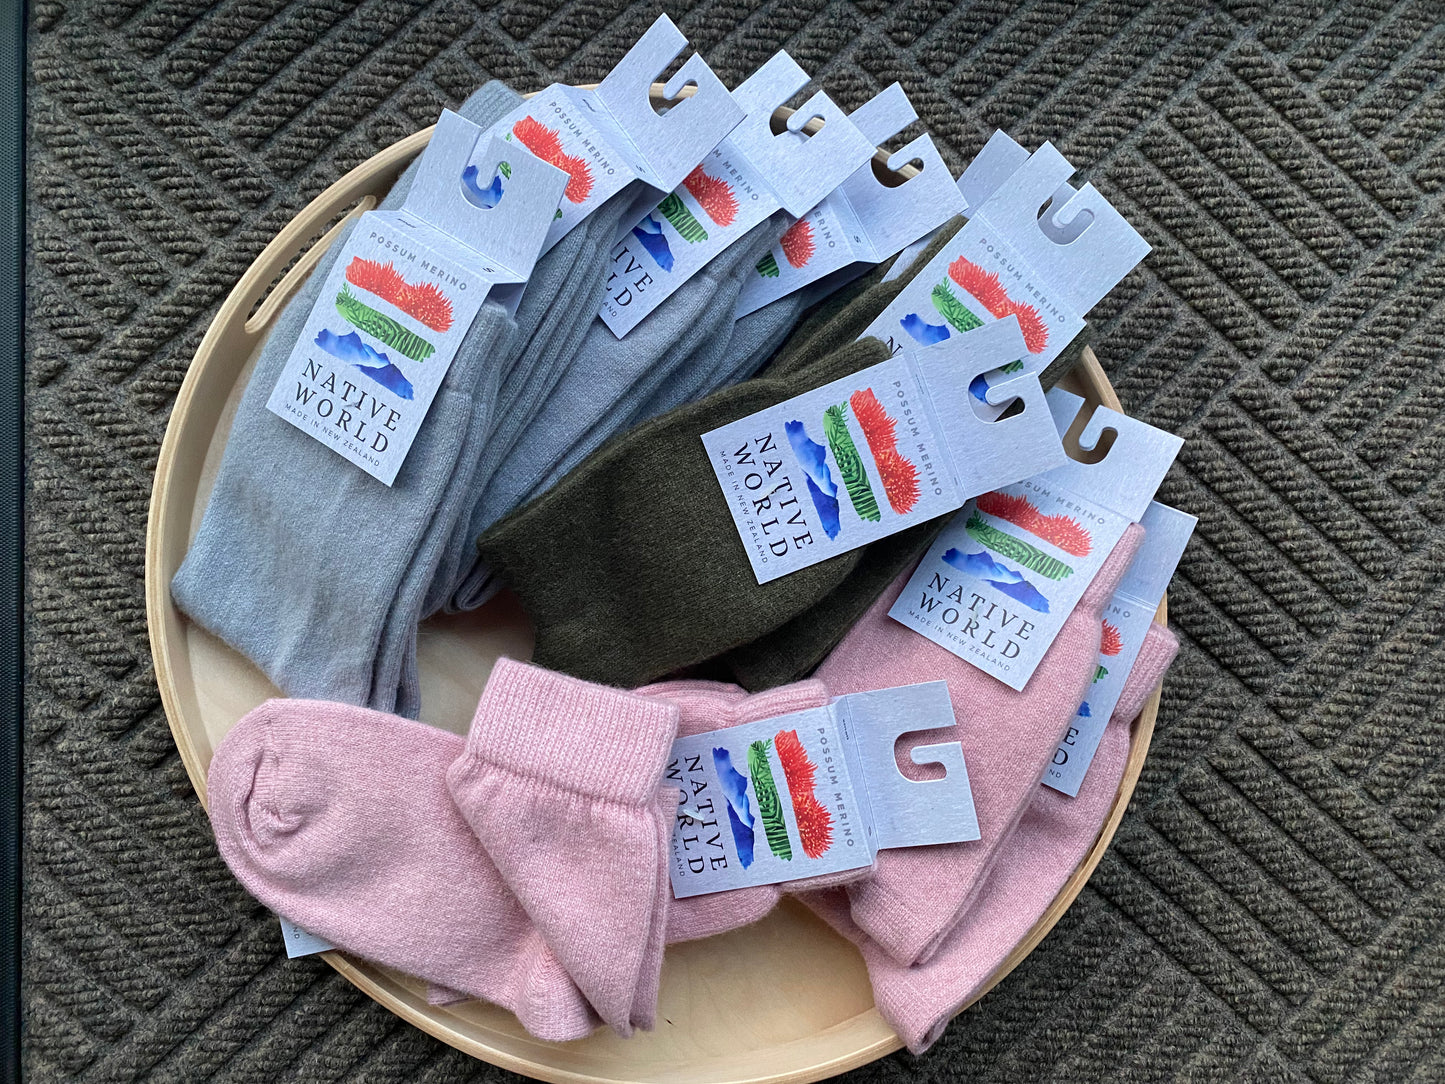 Socks: Plain Sock, Merino Wool + Possum, Made in New Zealand